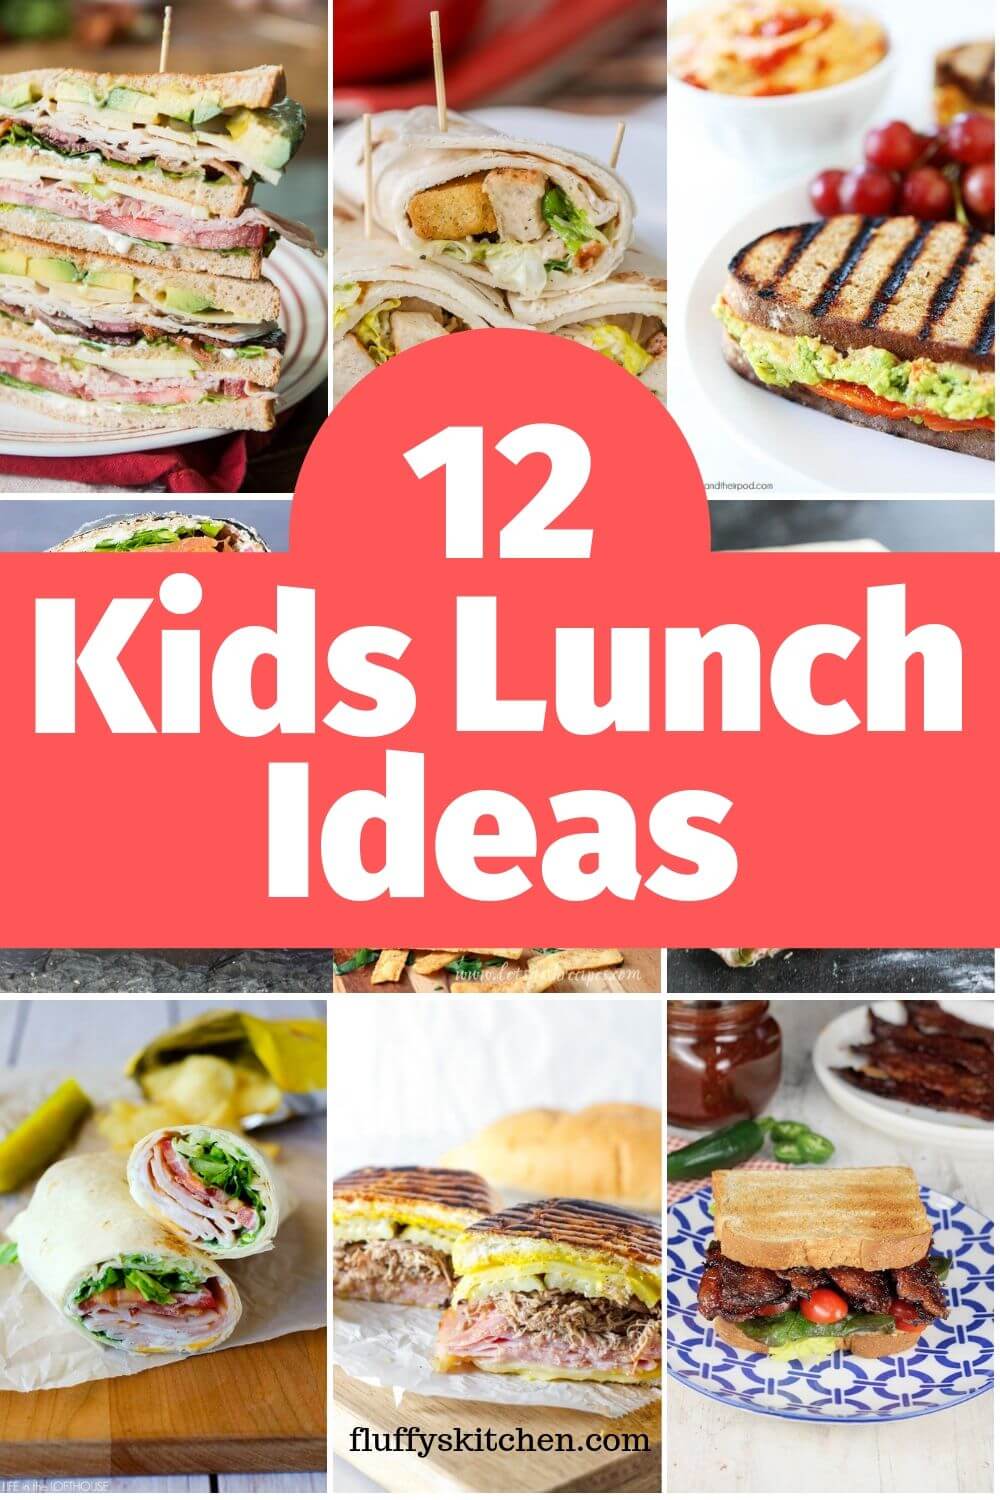 12 Kids Lunch Ideas - Fluffy's Kitchen